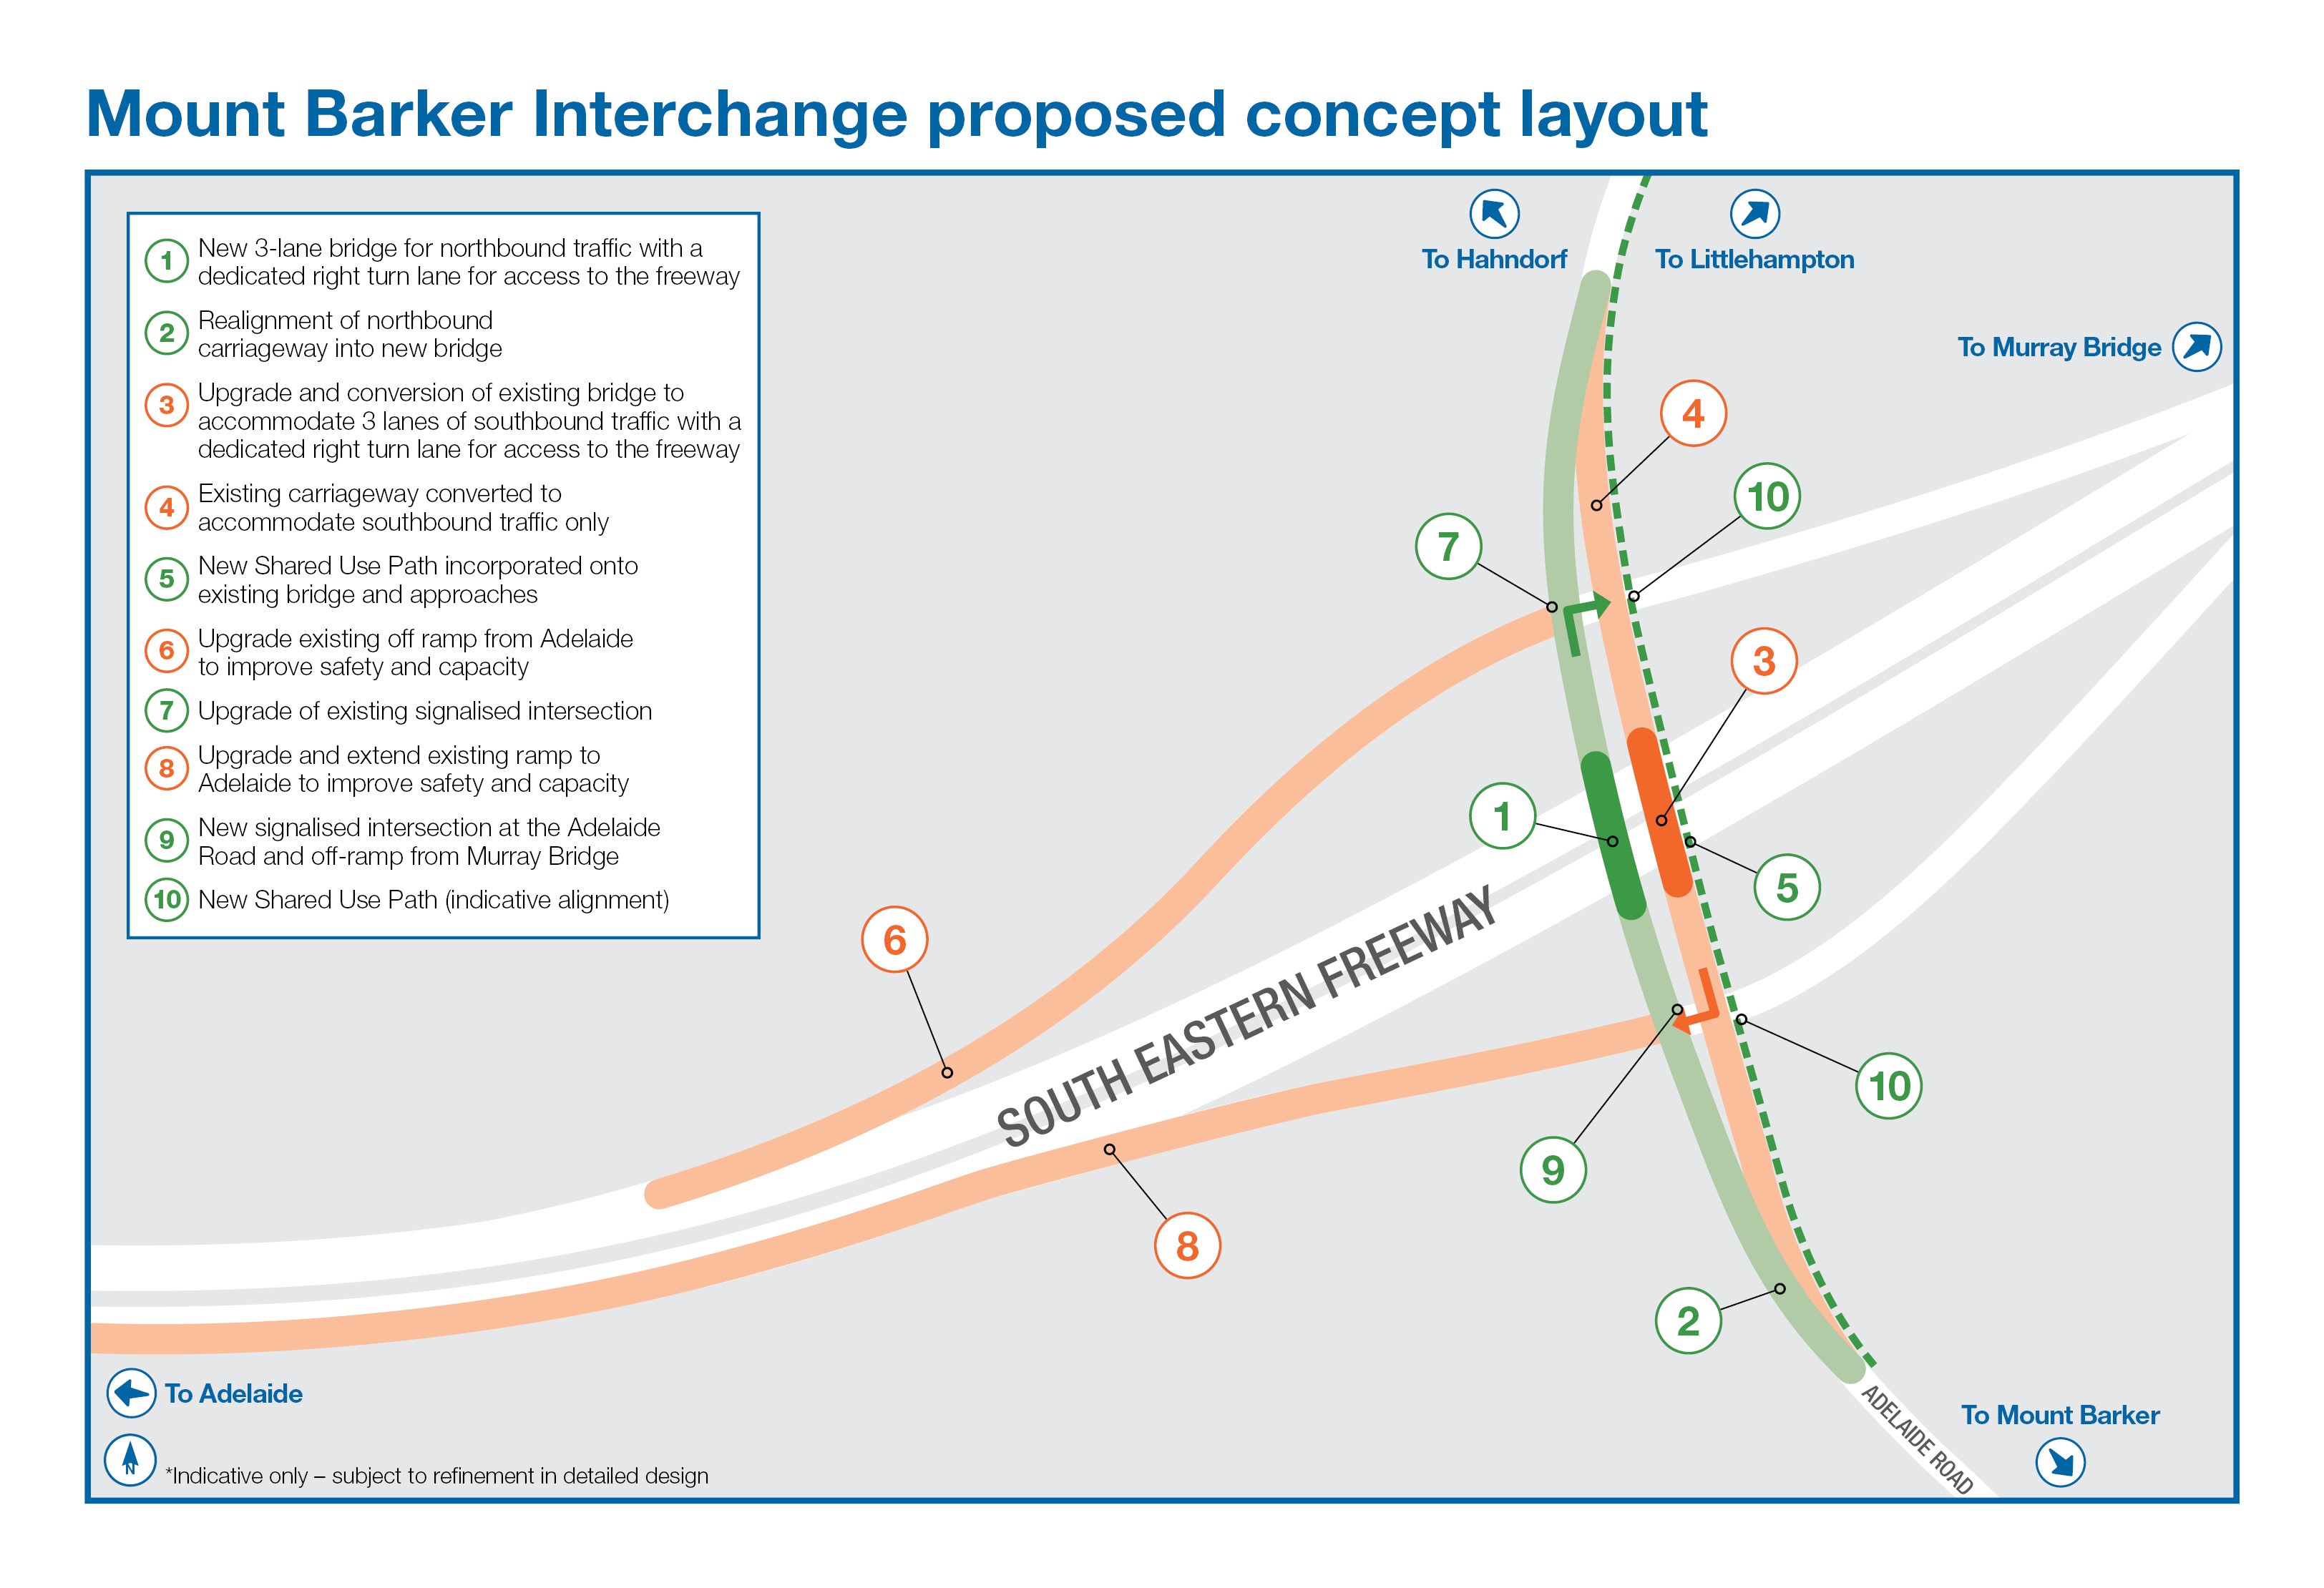 Mount Barker Interchange Proposed Concept